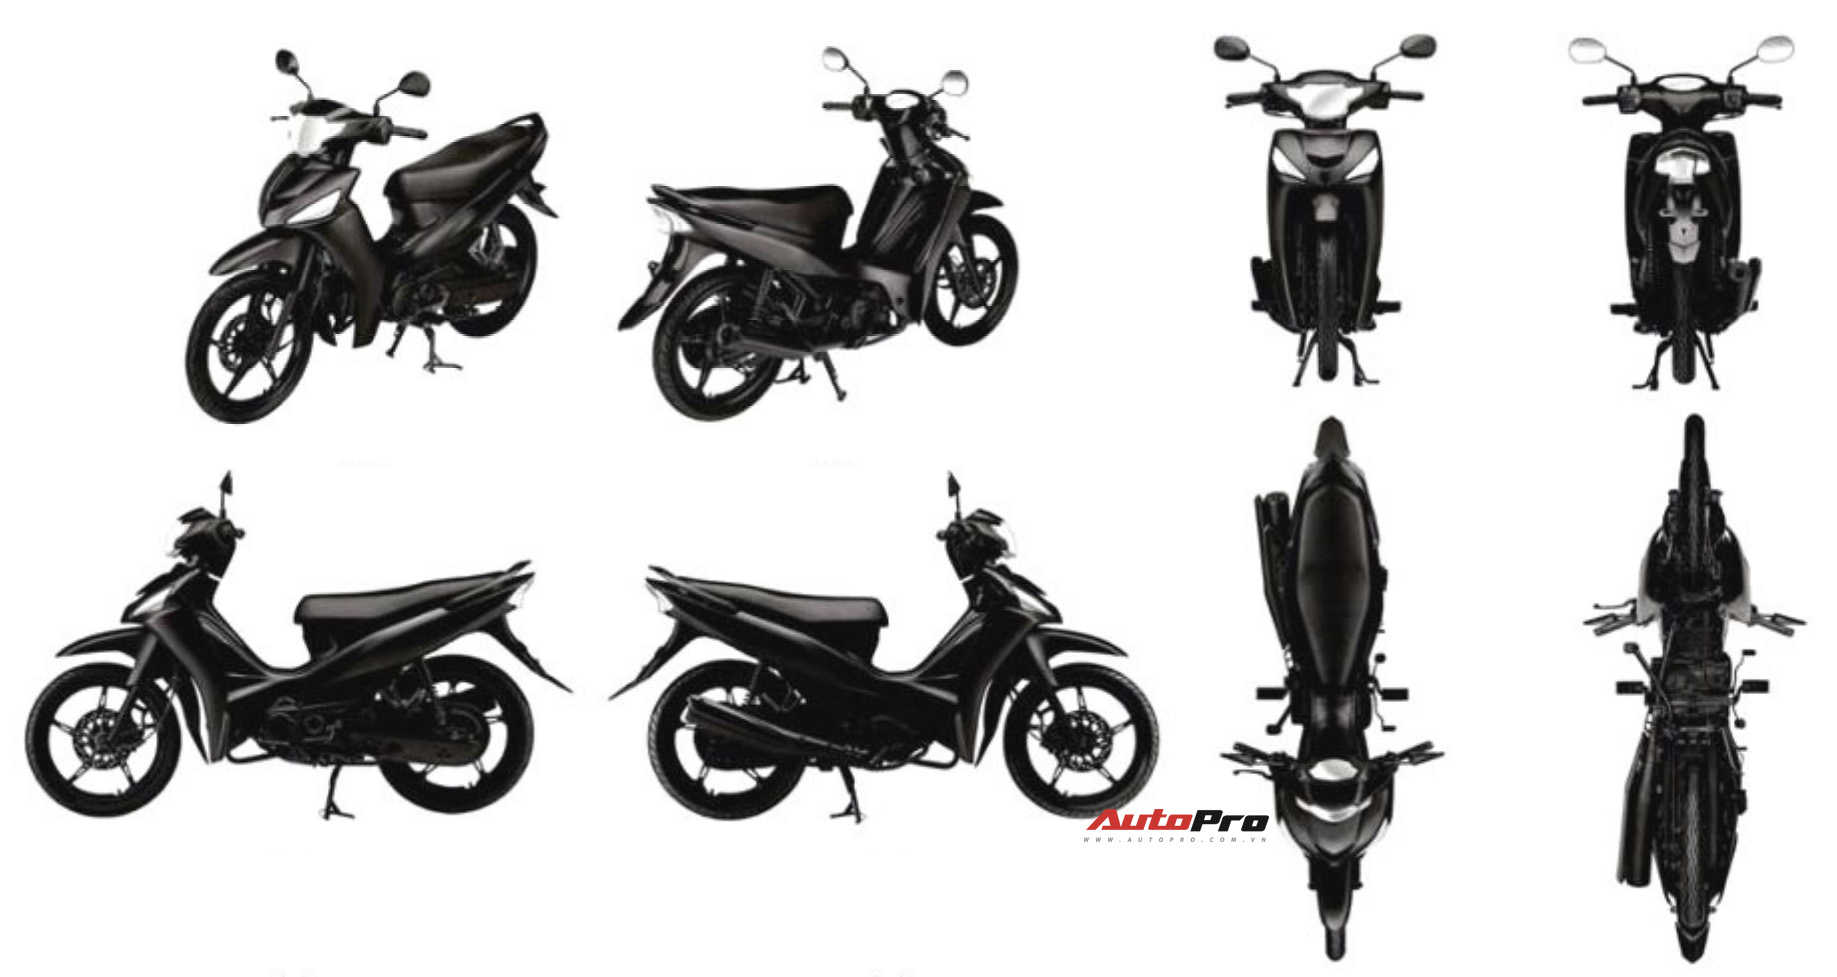 Yamaha đăng ký xe máy mới tại Việt Nam: Nhiều khả năng là dòng giá rẻ, cạnh tranh Honda Wave - Ảnh 1.